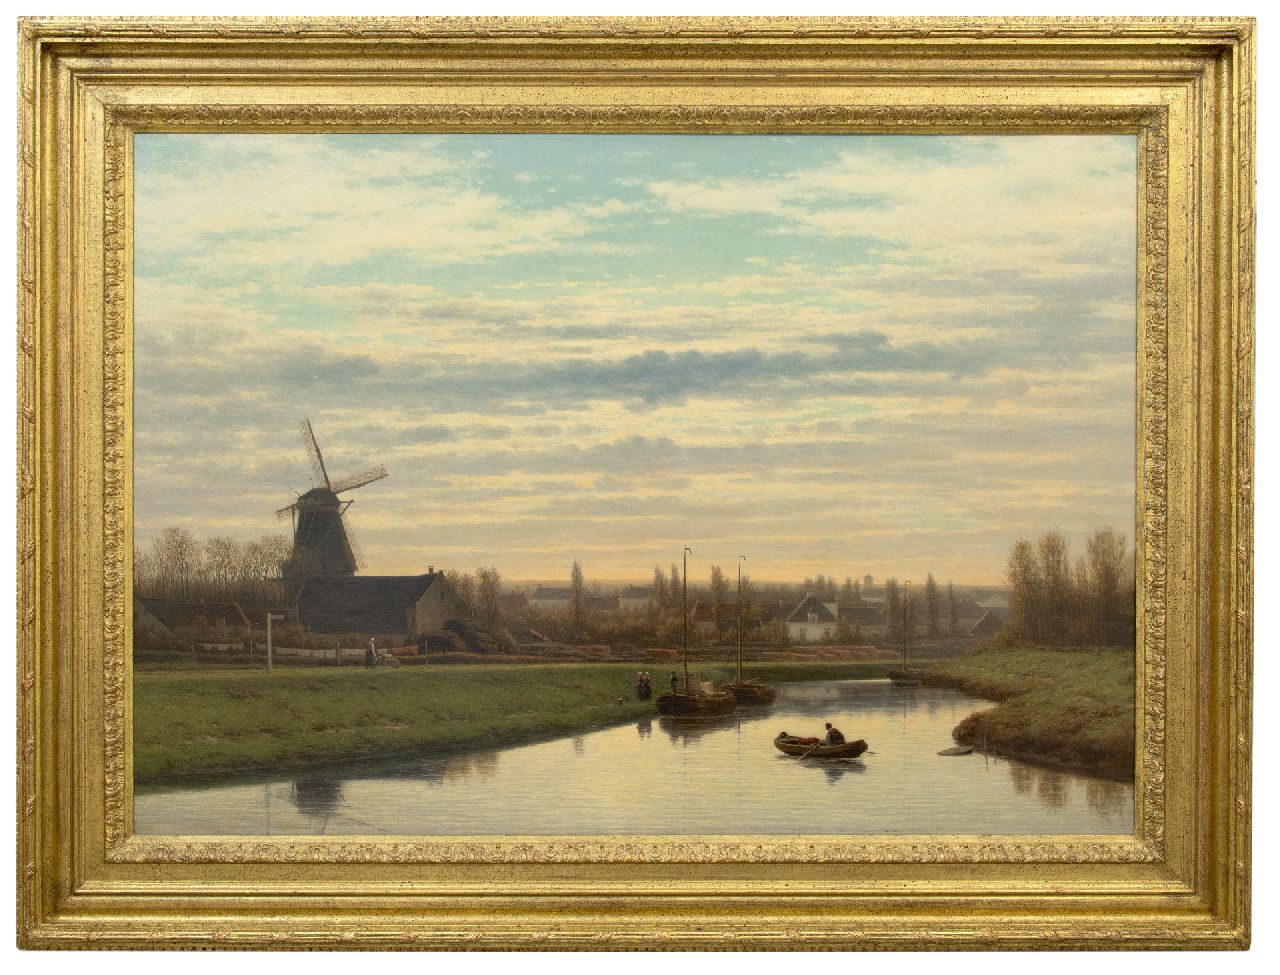 Maaten J.J. van der | Jacob Jan van der Maaten, View of the 'Apeldoorns Kanaal', oil on canvas 79.9 x 113.5 cm, signed l.l.